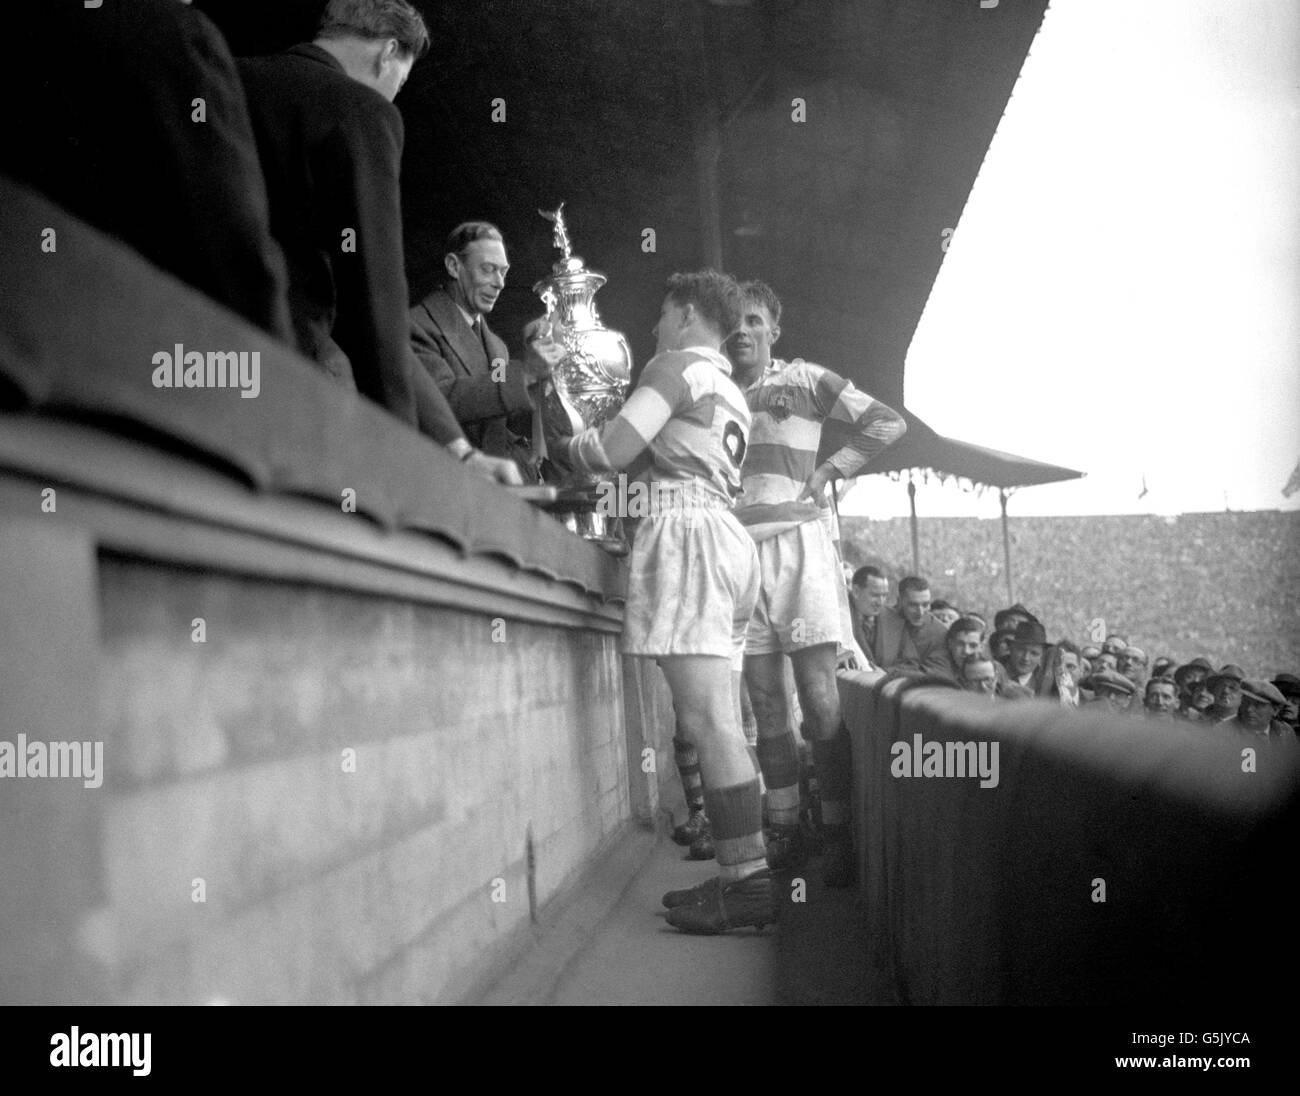 El rey George VI presenta la Copa Challenge a Joe Egan, capitán de Wigan, después de que Wigan hubiera derrotado a Bradford Northern 8-3 en la final de la copa celebrada en Wembley. Foto de stock